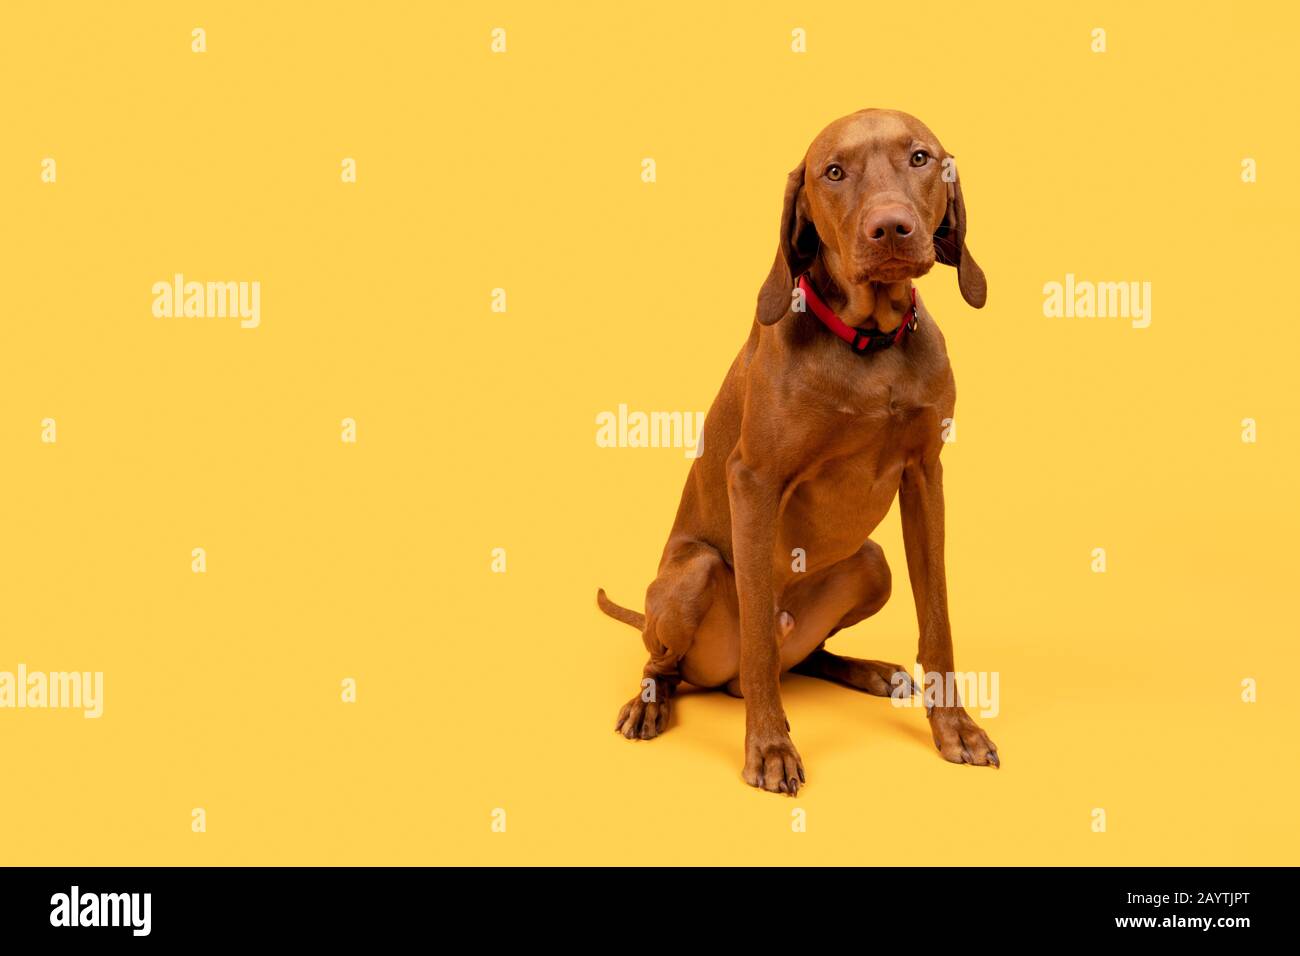 Niedliches, lustiges, ungarisches vizsla-hund-Studio-Porträt mit Ganzkörper-Studio. Lustiger Hund sitzt und blickt auf die Kamera, Vorderansicht über hellgelben Hintergrund. Stockfoto